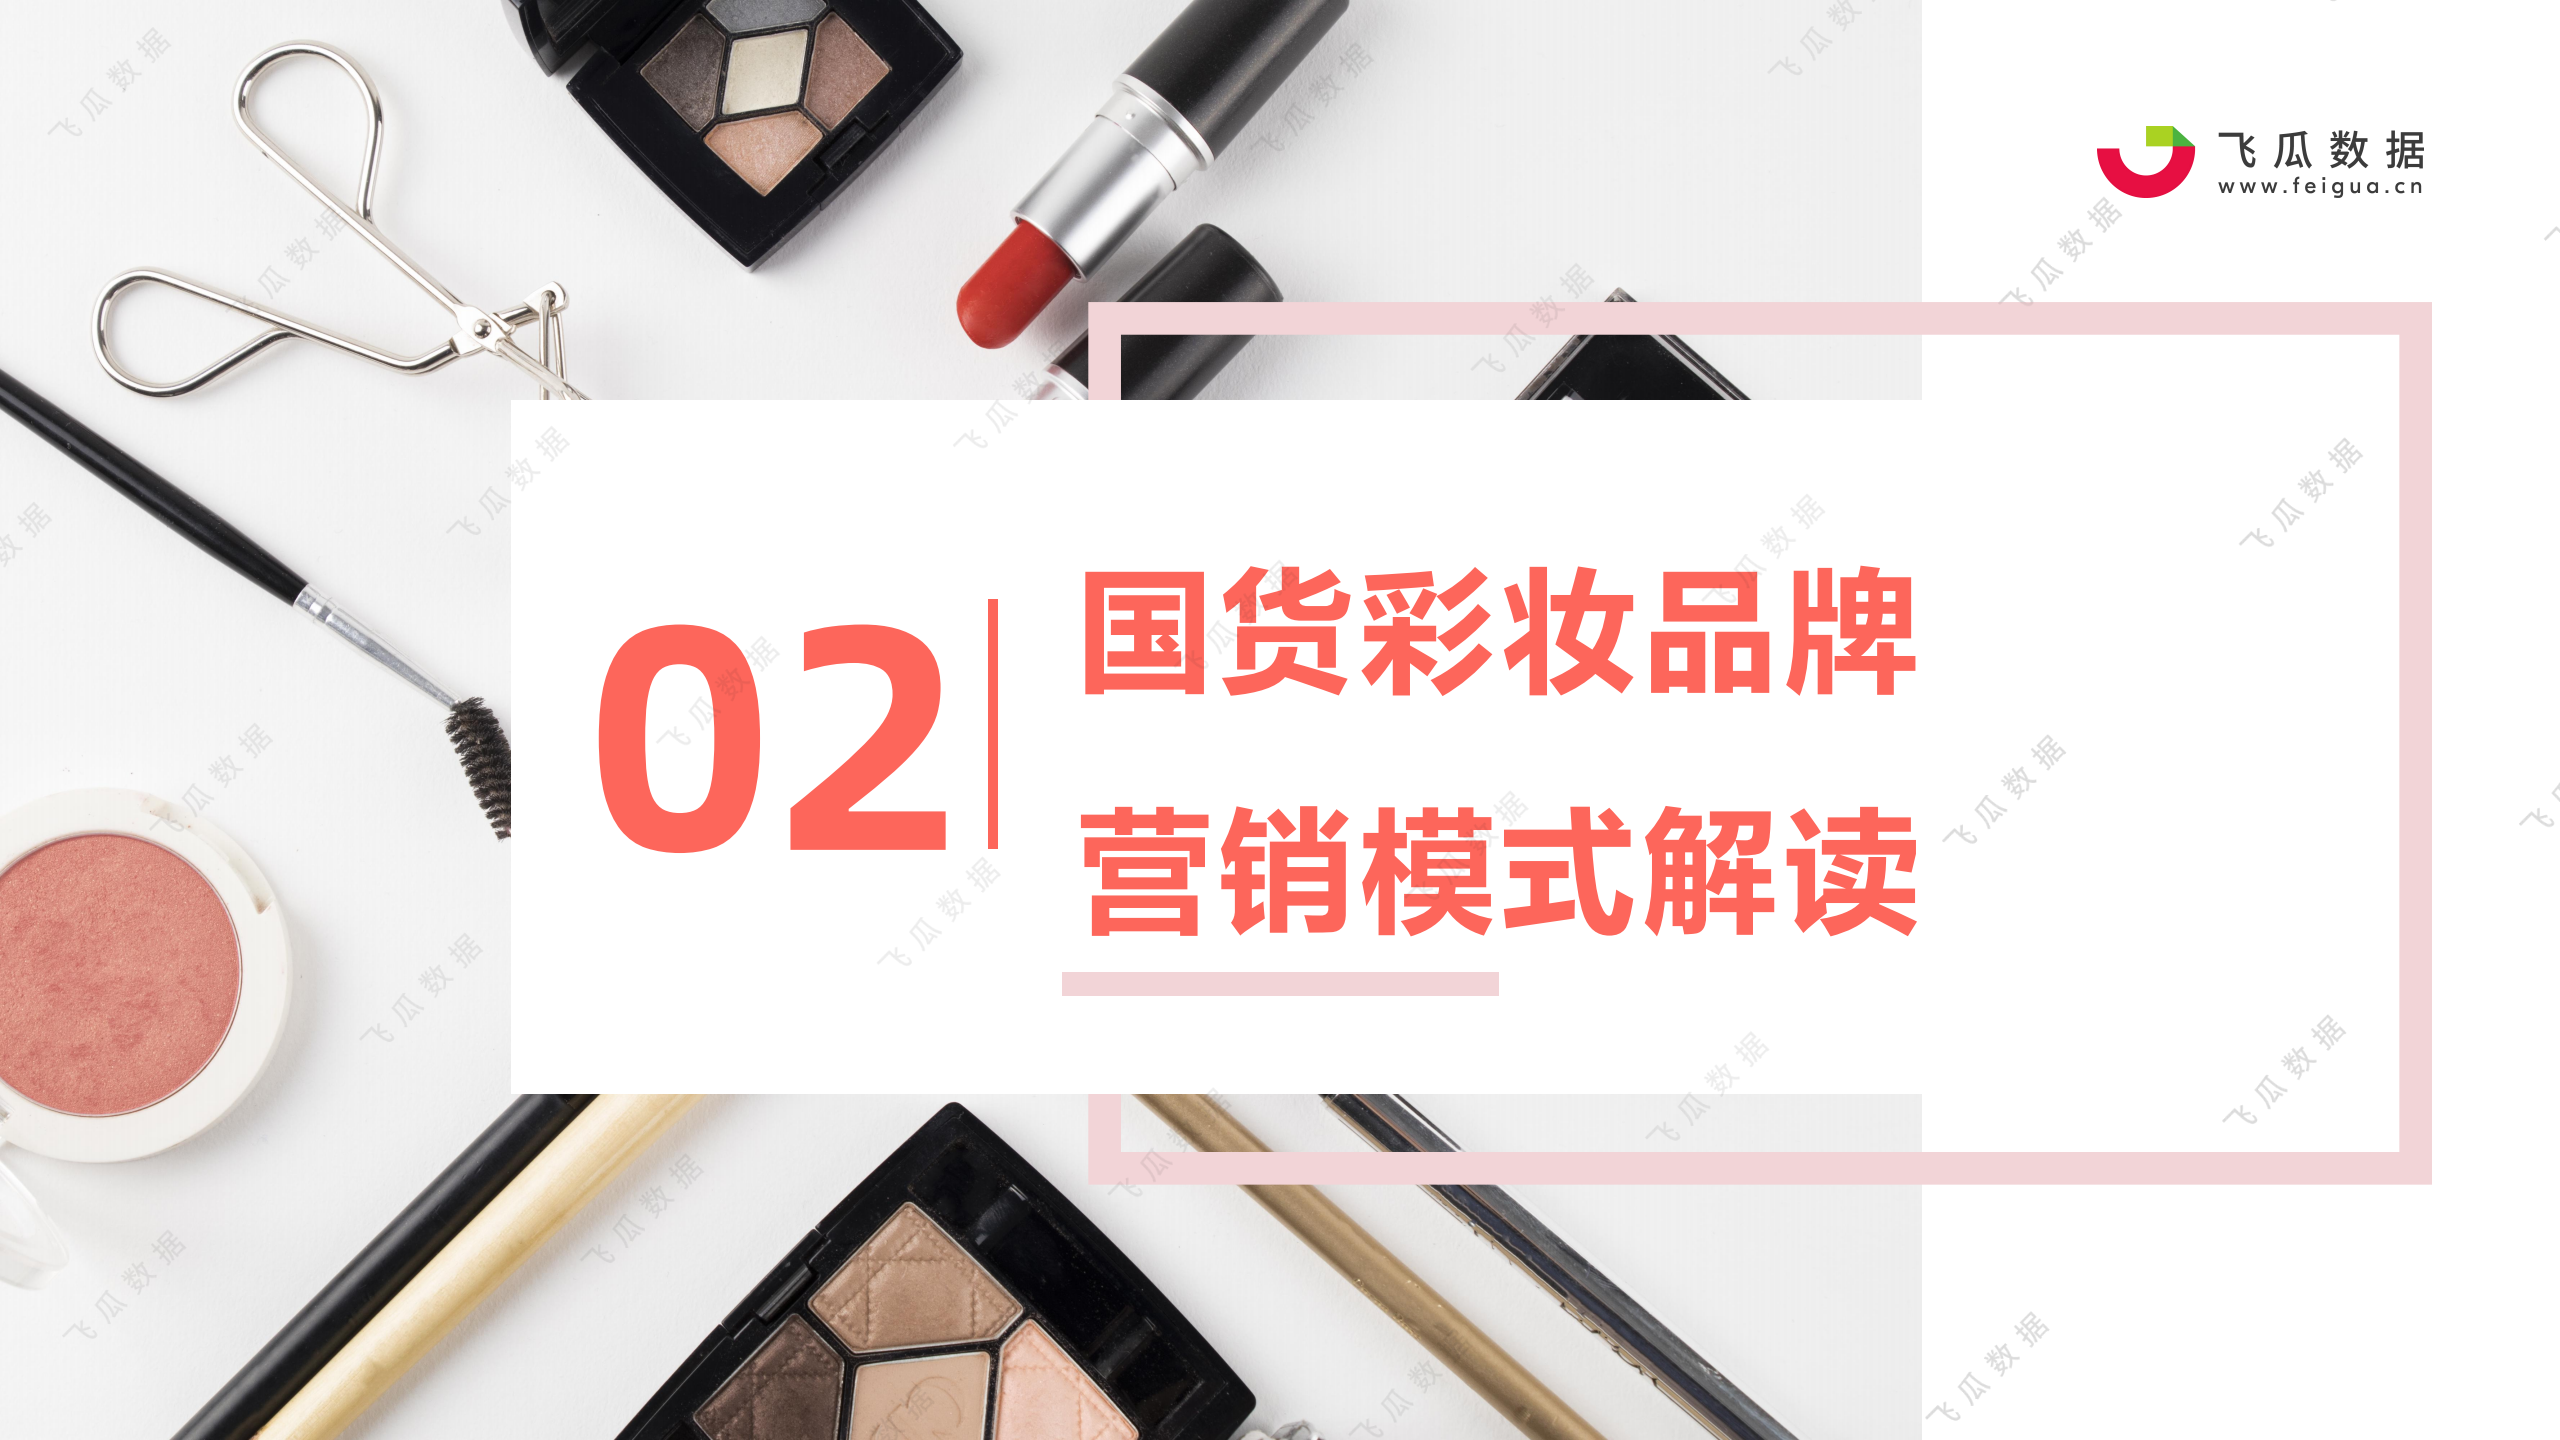 2021年国货彩妆品牌推广营销趋势